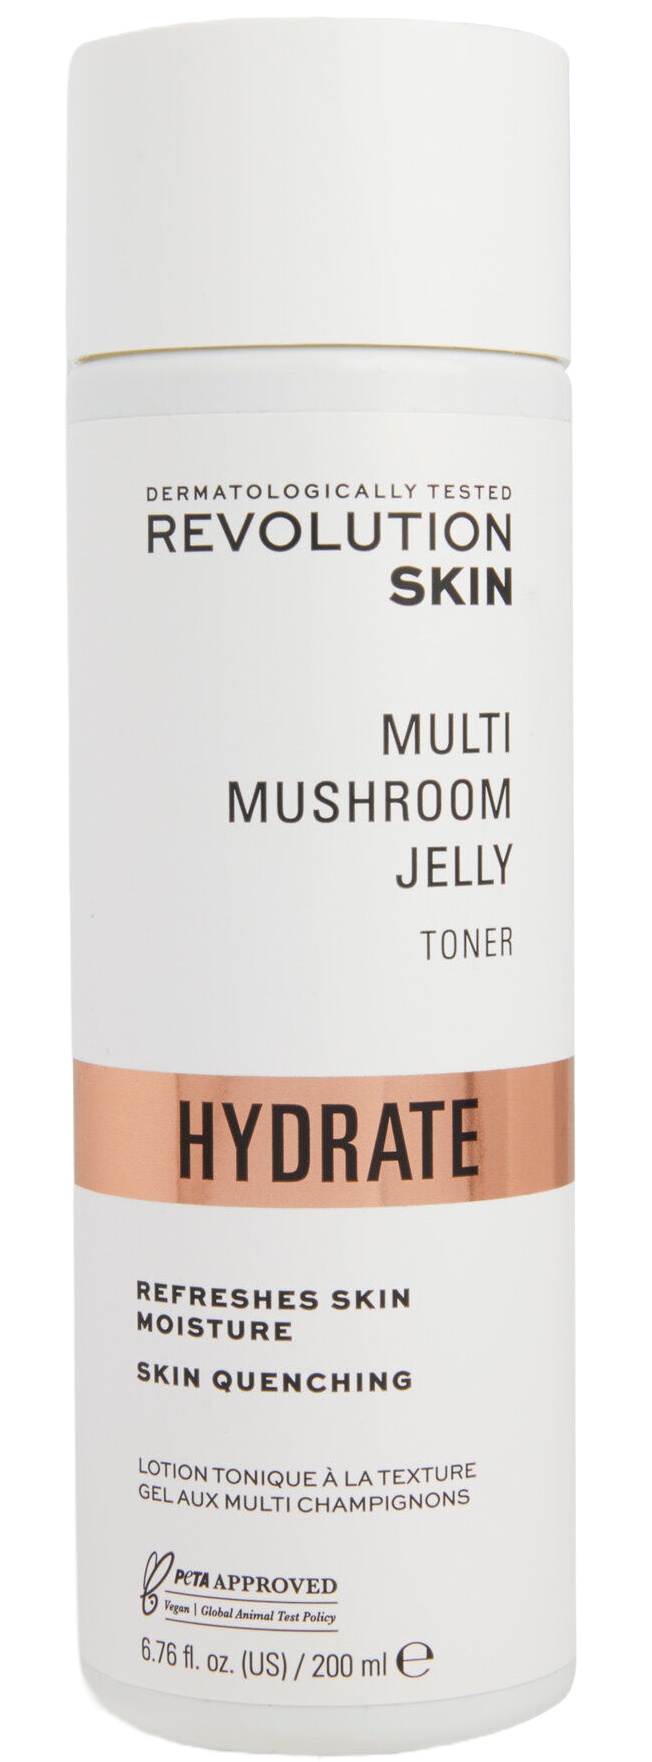 Revolution Skin Multi Mushroom Jelly Toner